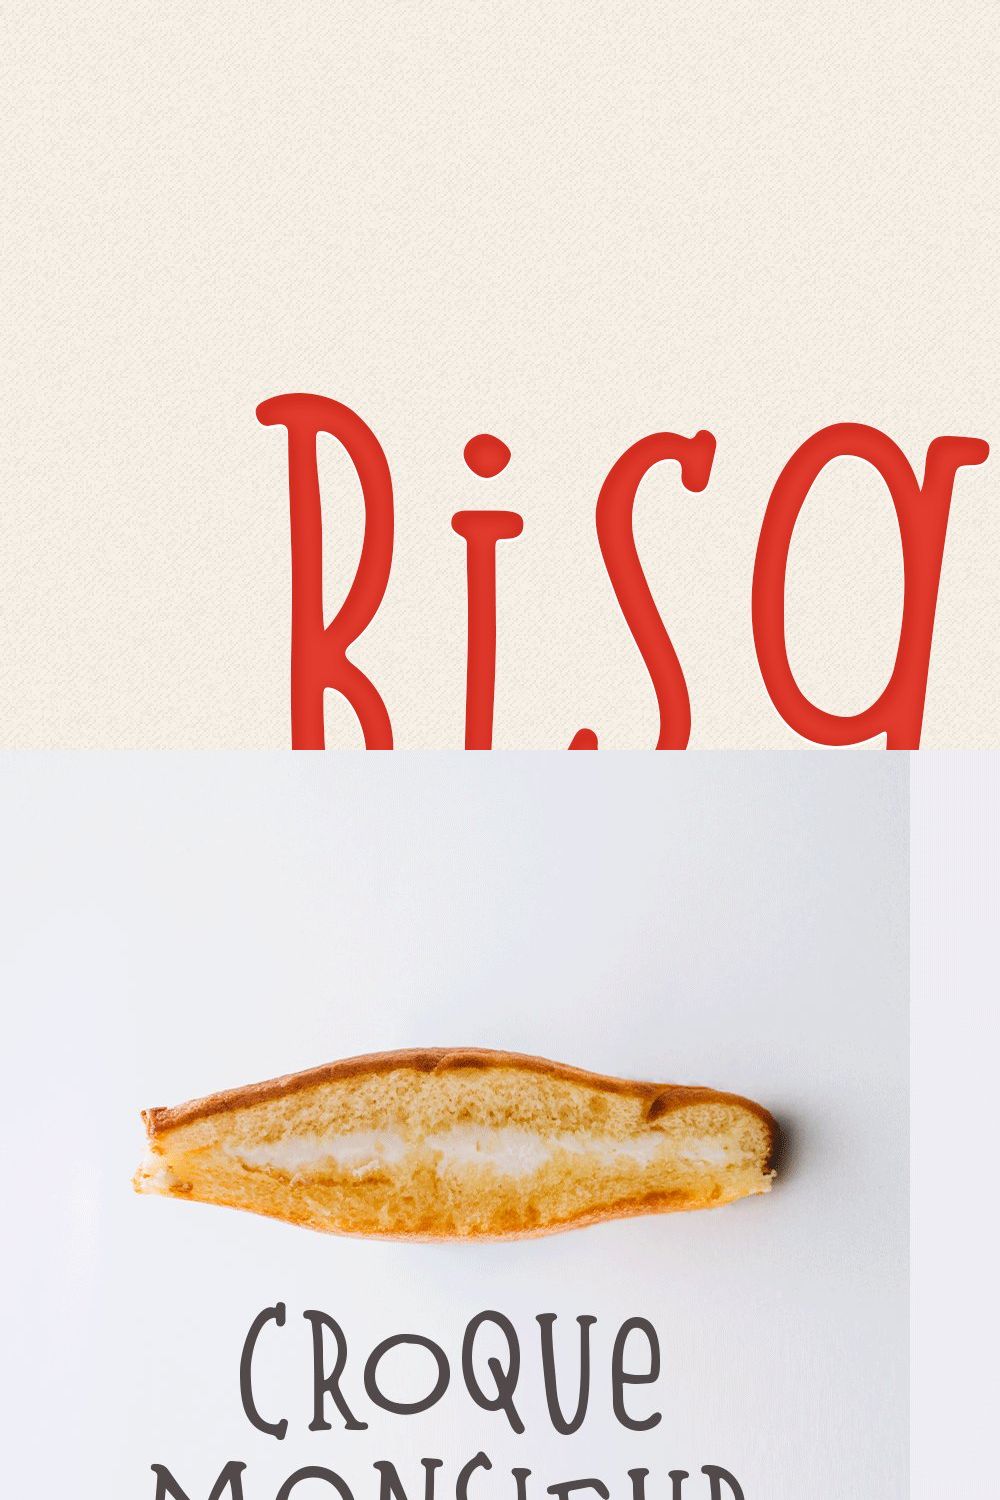 Bisquit | A Unique Serif Font pinterest preview image.